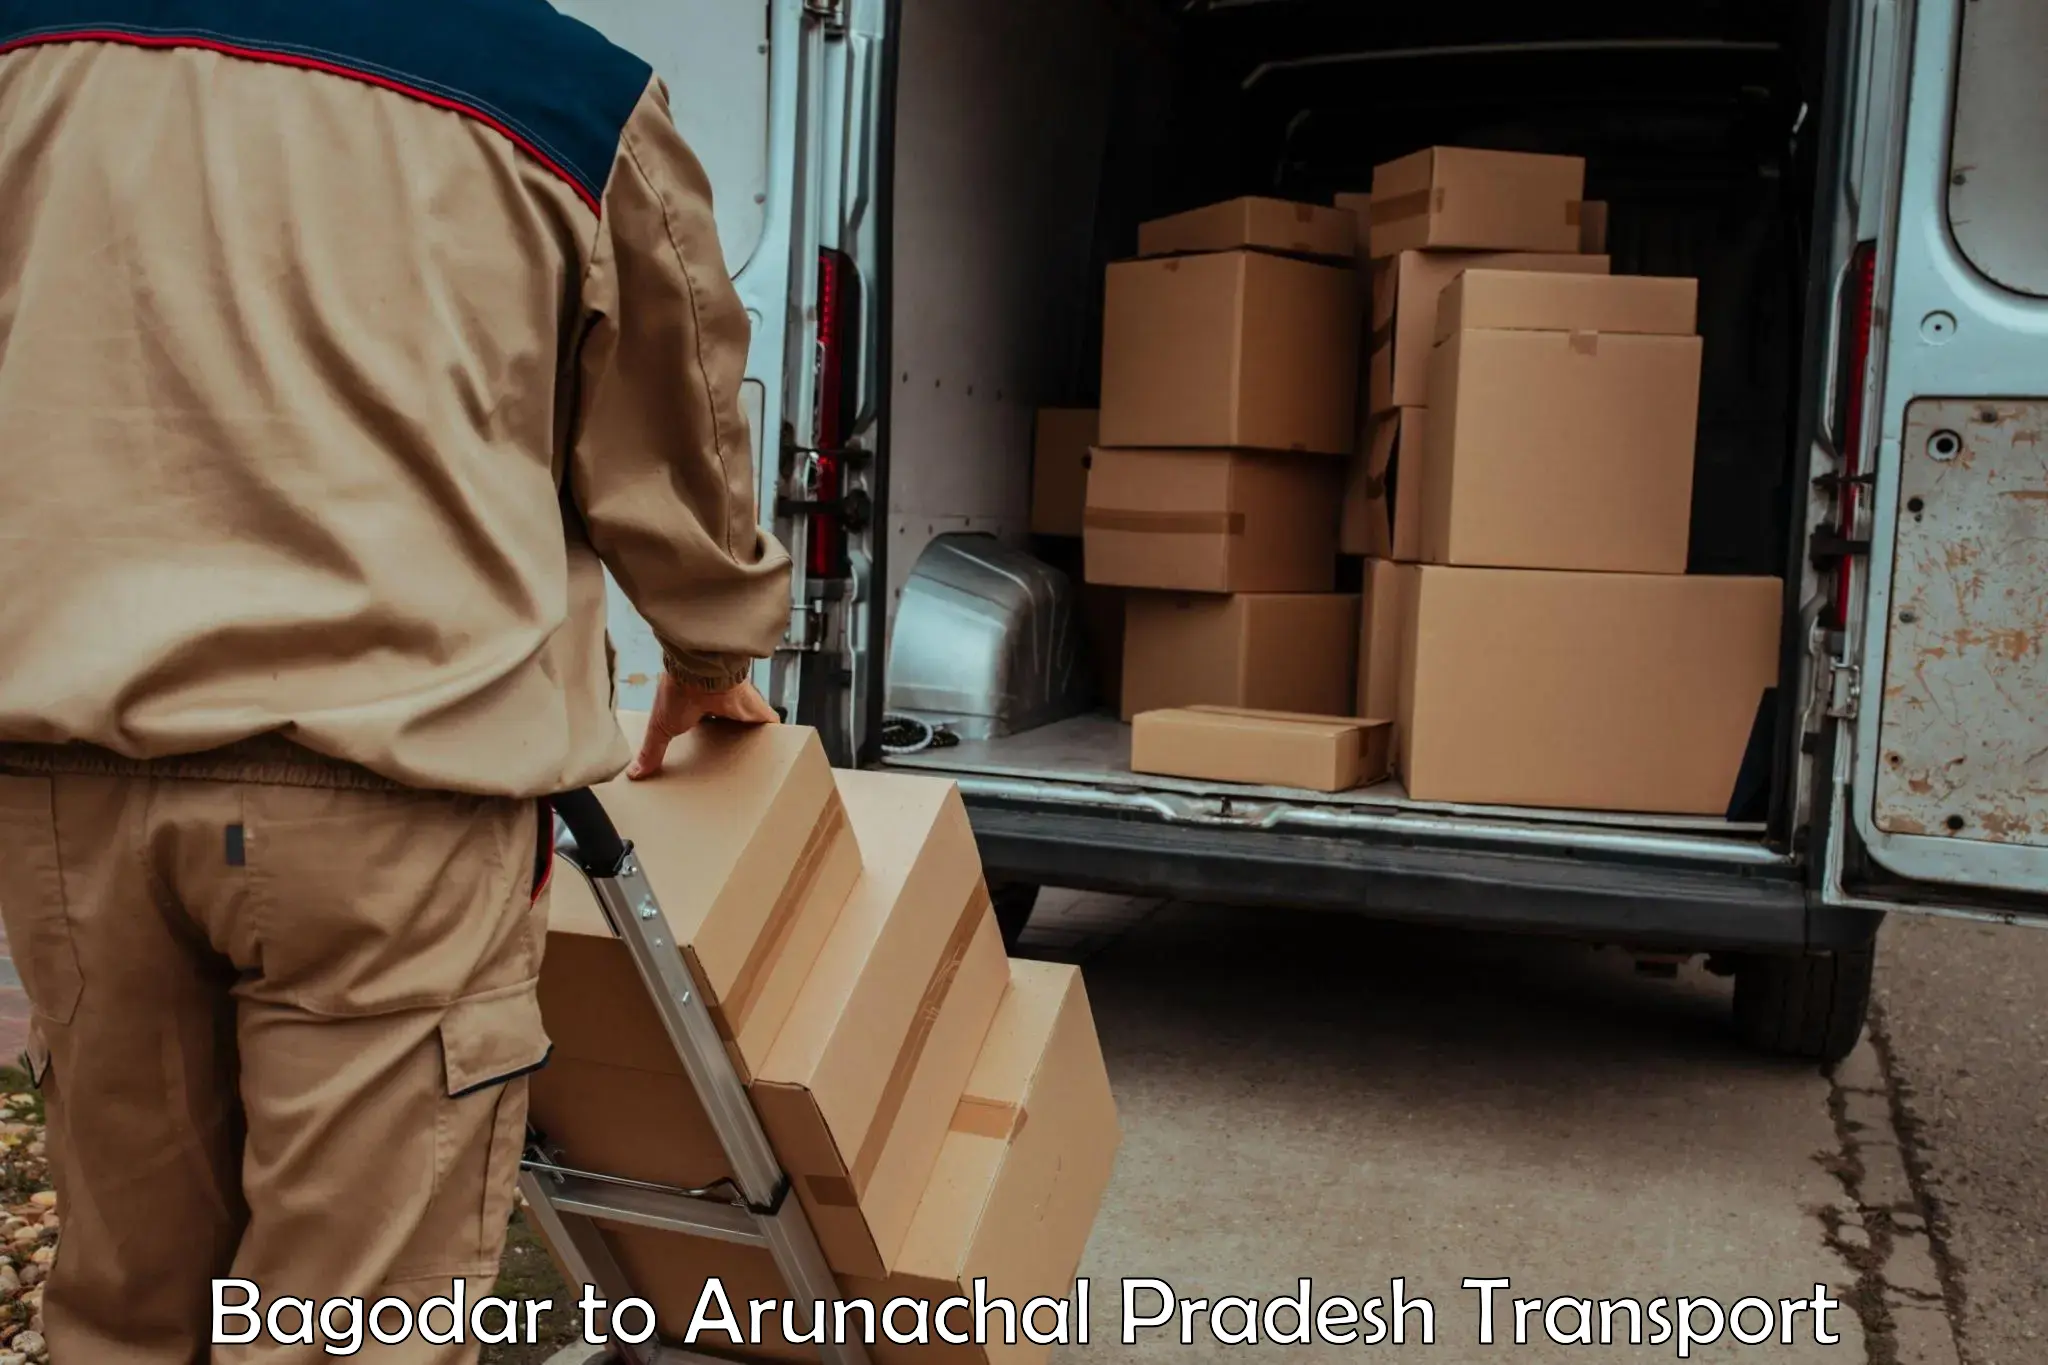 Transport services in Bagodar to Arunachal Pradesh